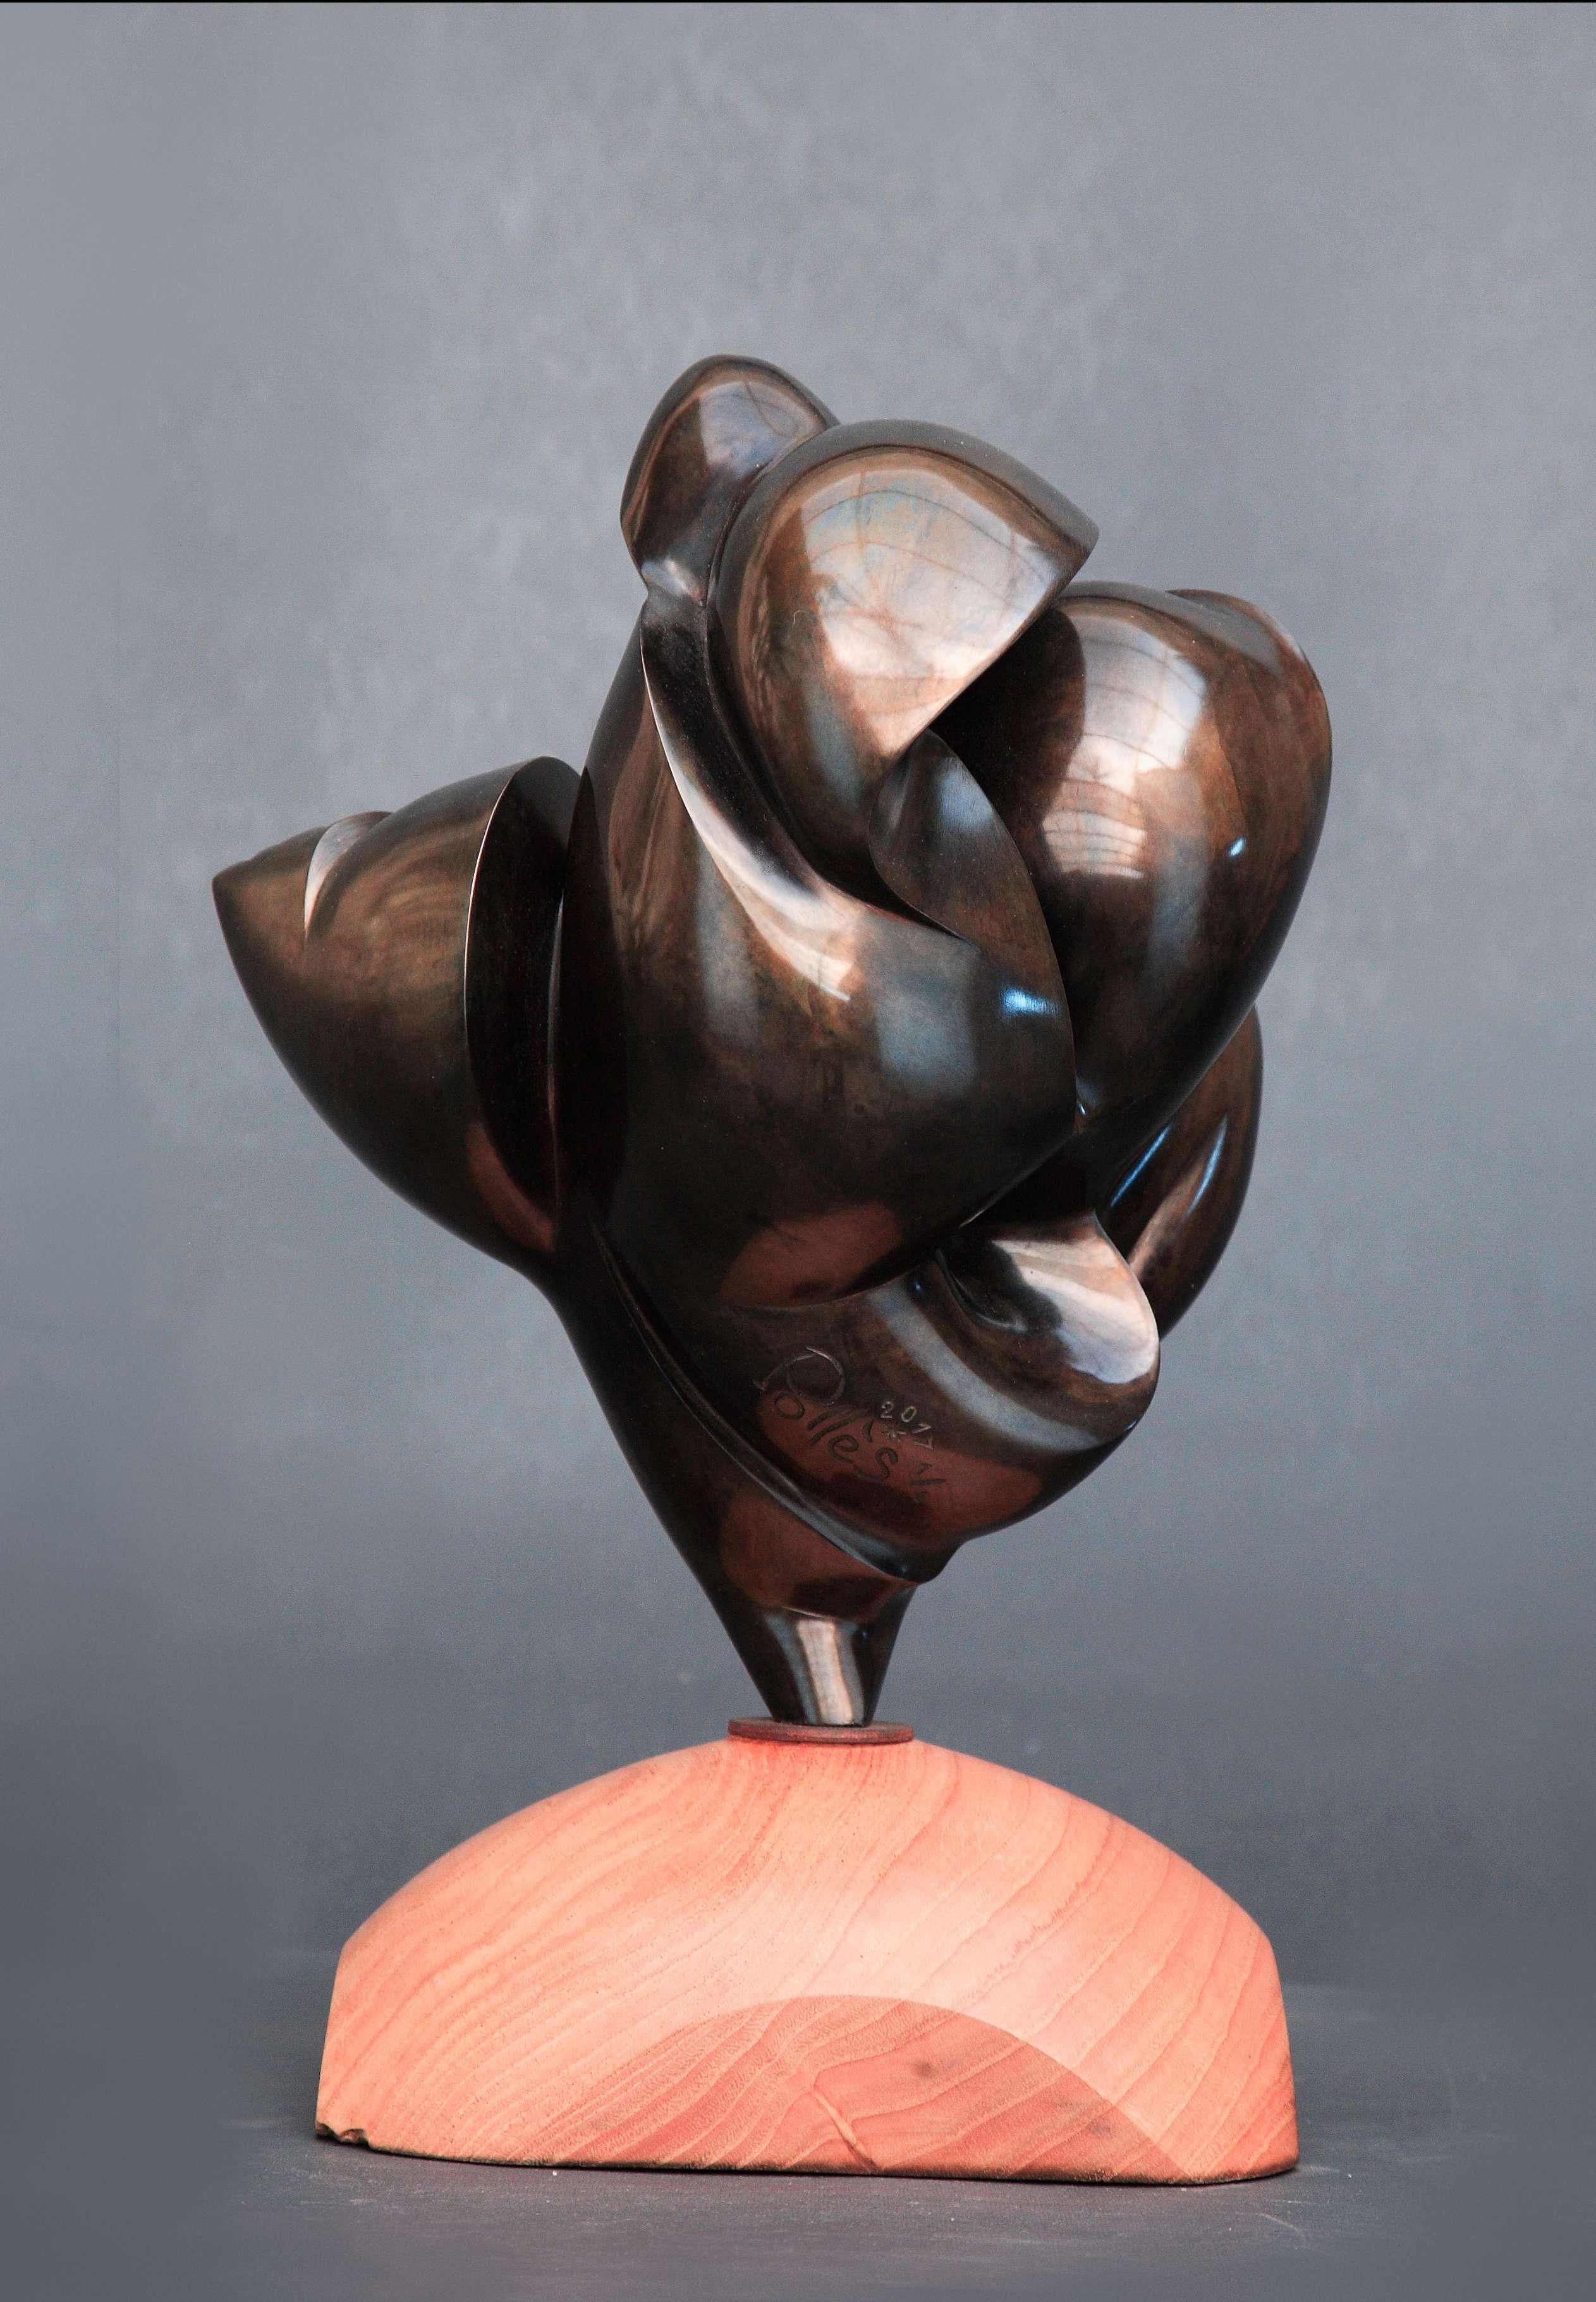 Pollès - Bronze-Skulptur - Thelxinoé
Bronze
Auflage: 1/4
2016
Abmessungen: 28 x 21 x 20 cm
Signiert und nummeriert

BIOGRAPHIE
Pollès wurde 1945 in Paris geboren
Wie Leonard de Vinci auf der Suche nach anatomischer Perfektion, nach der Darstellung